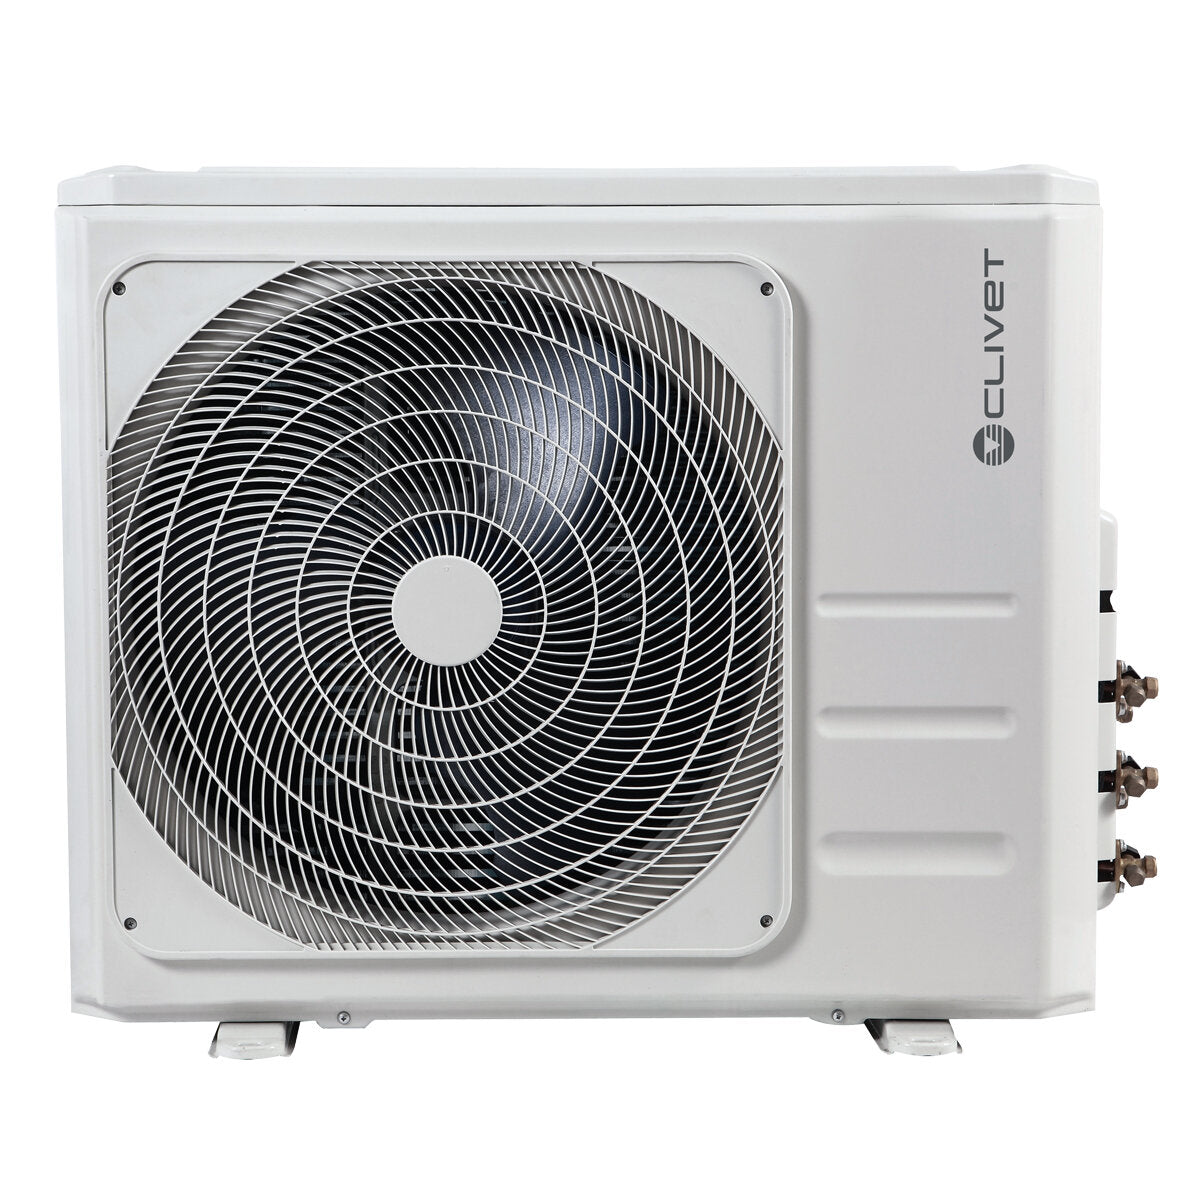 Clivet Cristallo air conditioner 2 split panels 9000+9000+12000+18000 BTU inverter A+ wifi external unit 12.3 kW